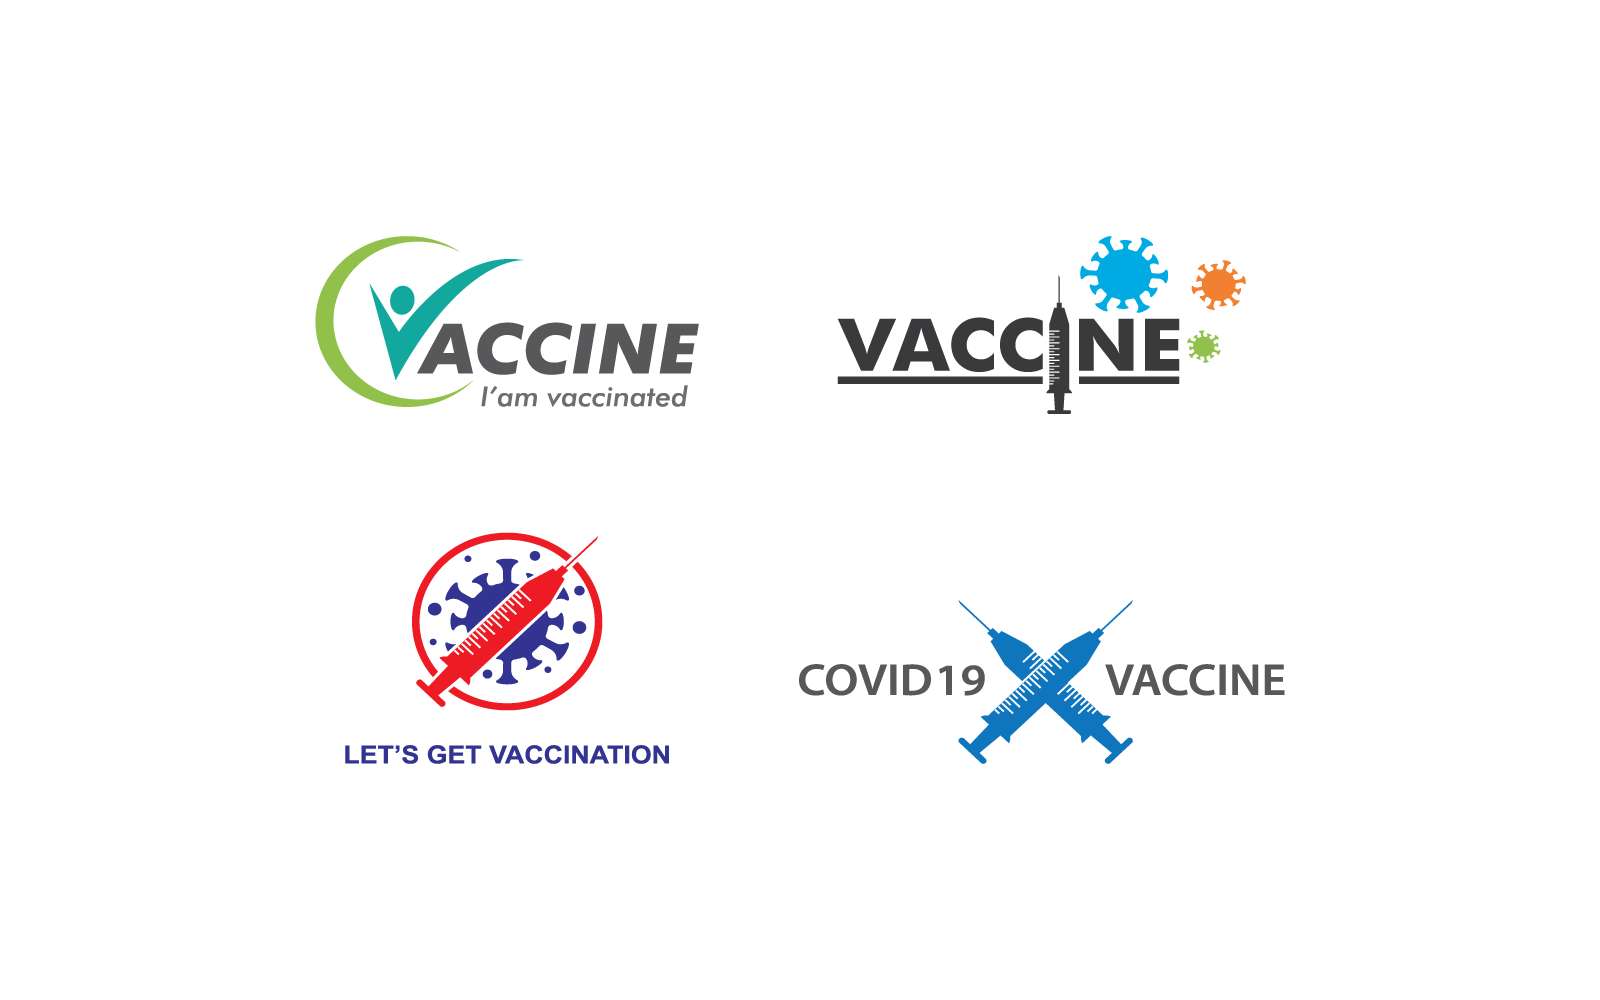 Vorlage für die Vektorillustration des Impfstofflogos